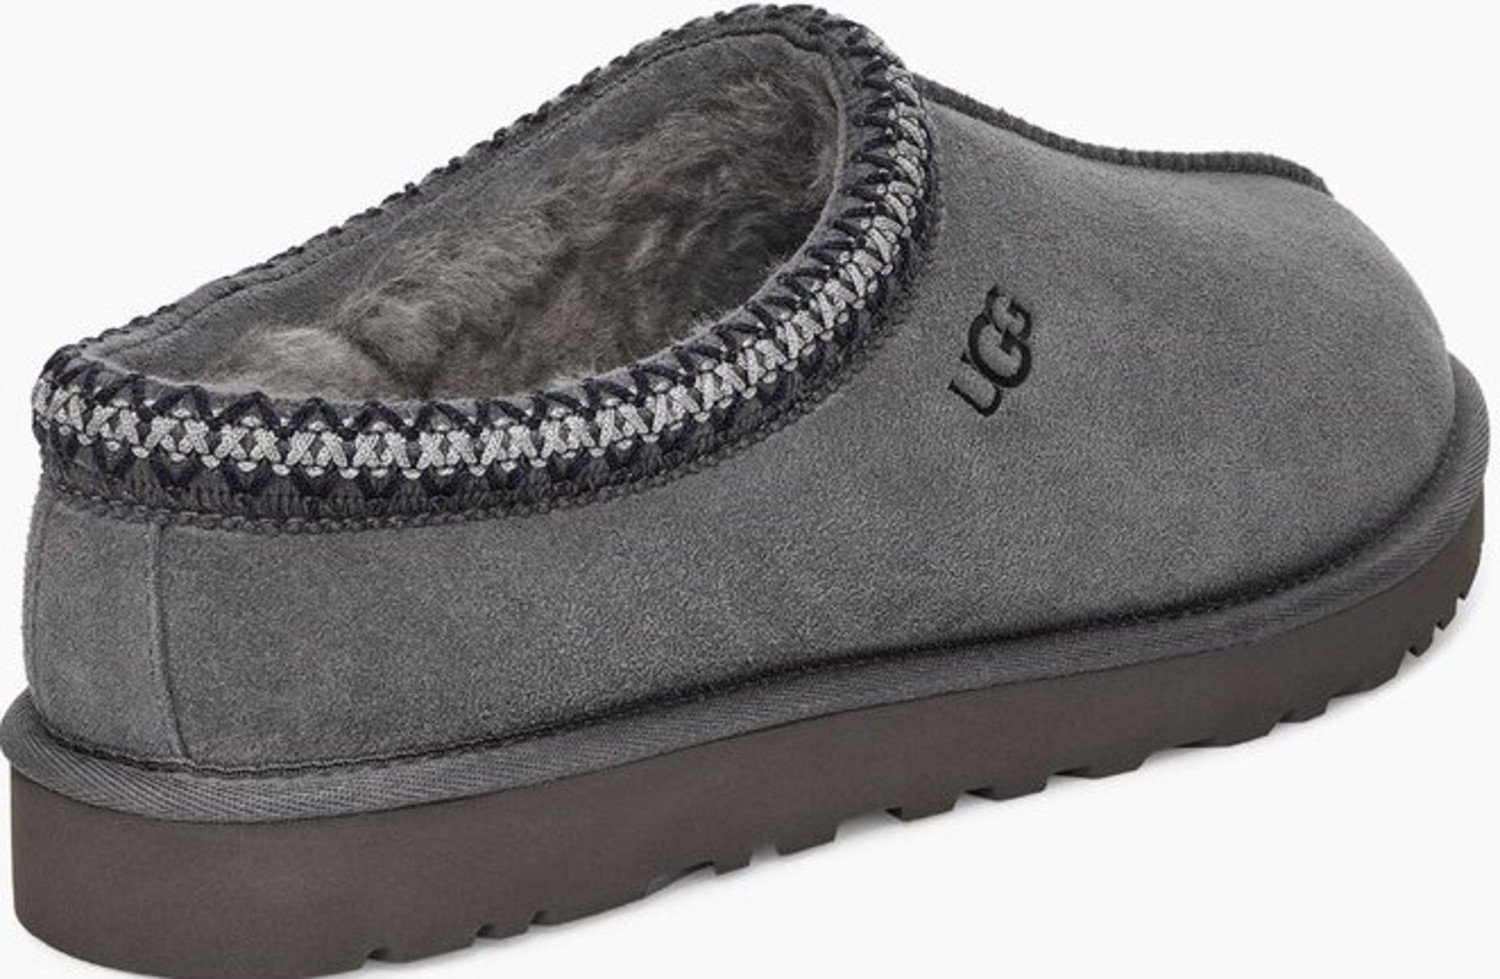 UGG tasman slippers in black suede